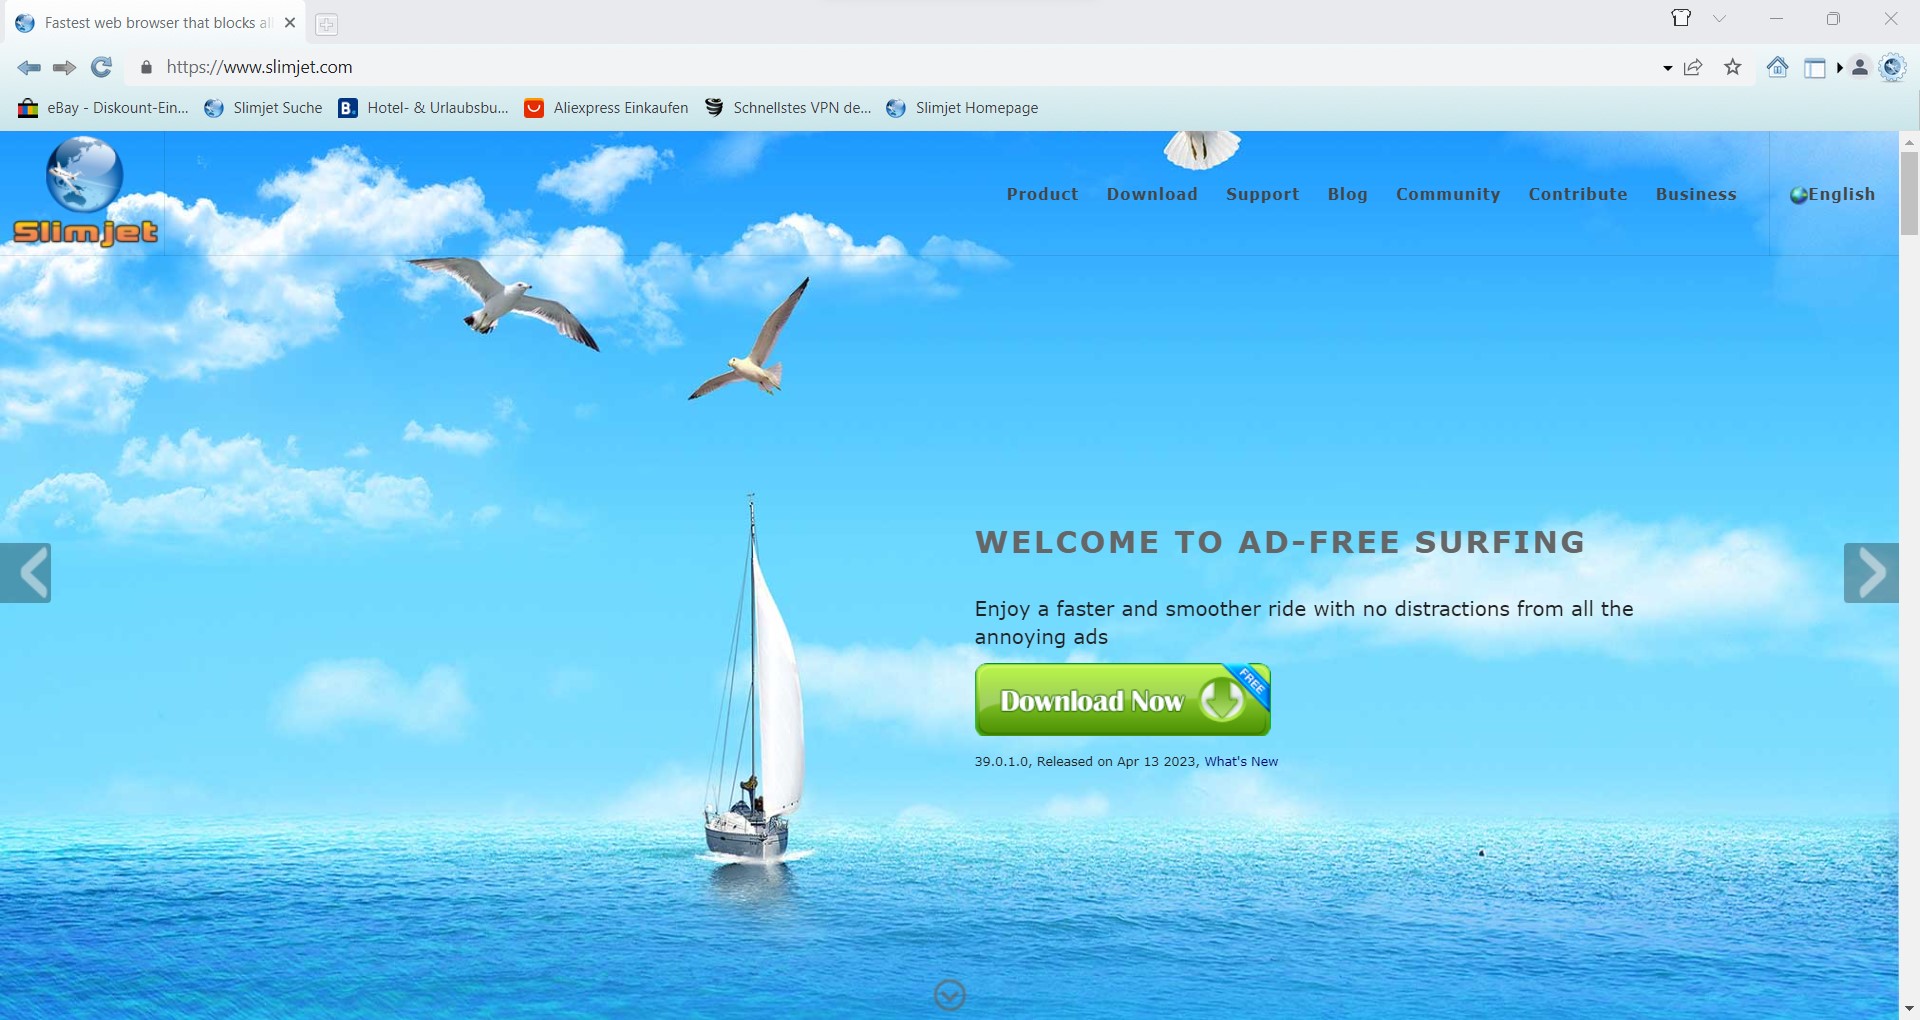 screenshot slimjet browser add-free surfing slimjet.com